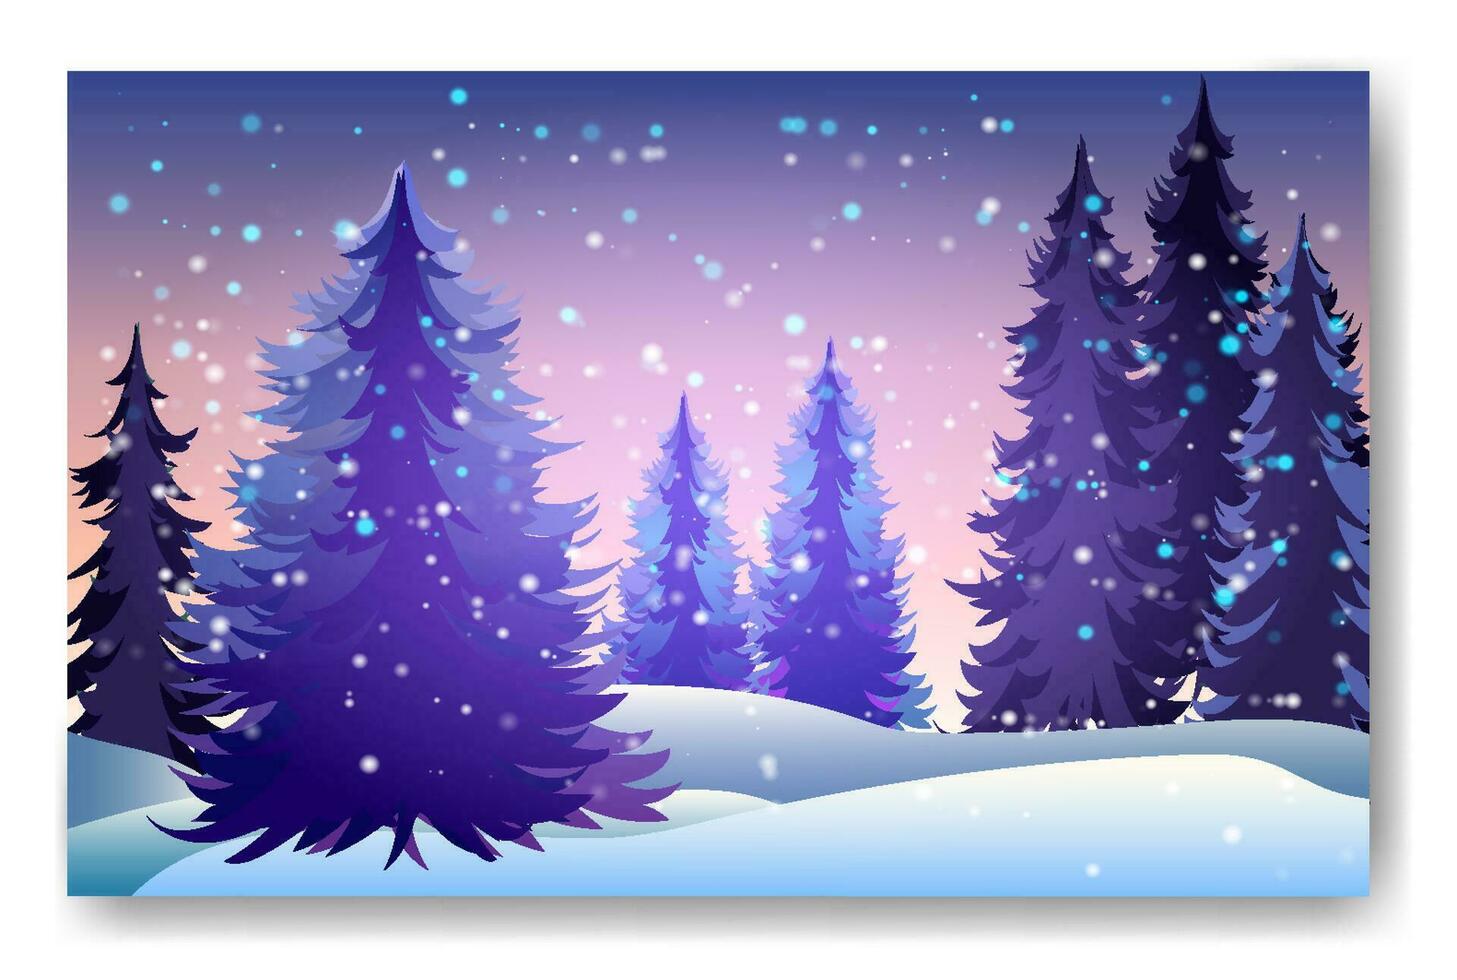 winter achtergrond landschap met Spar bomen en dennen in sneeuw. naald- Woud, nacht, lucht, sterren. Kerstmis decoratie. vector illustratie